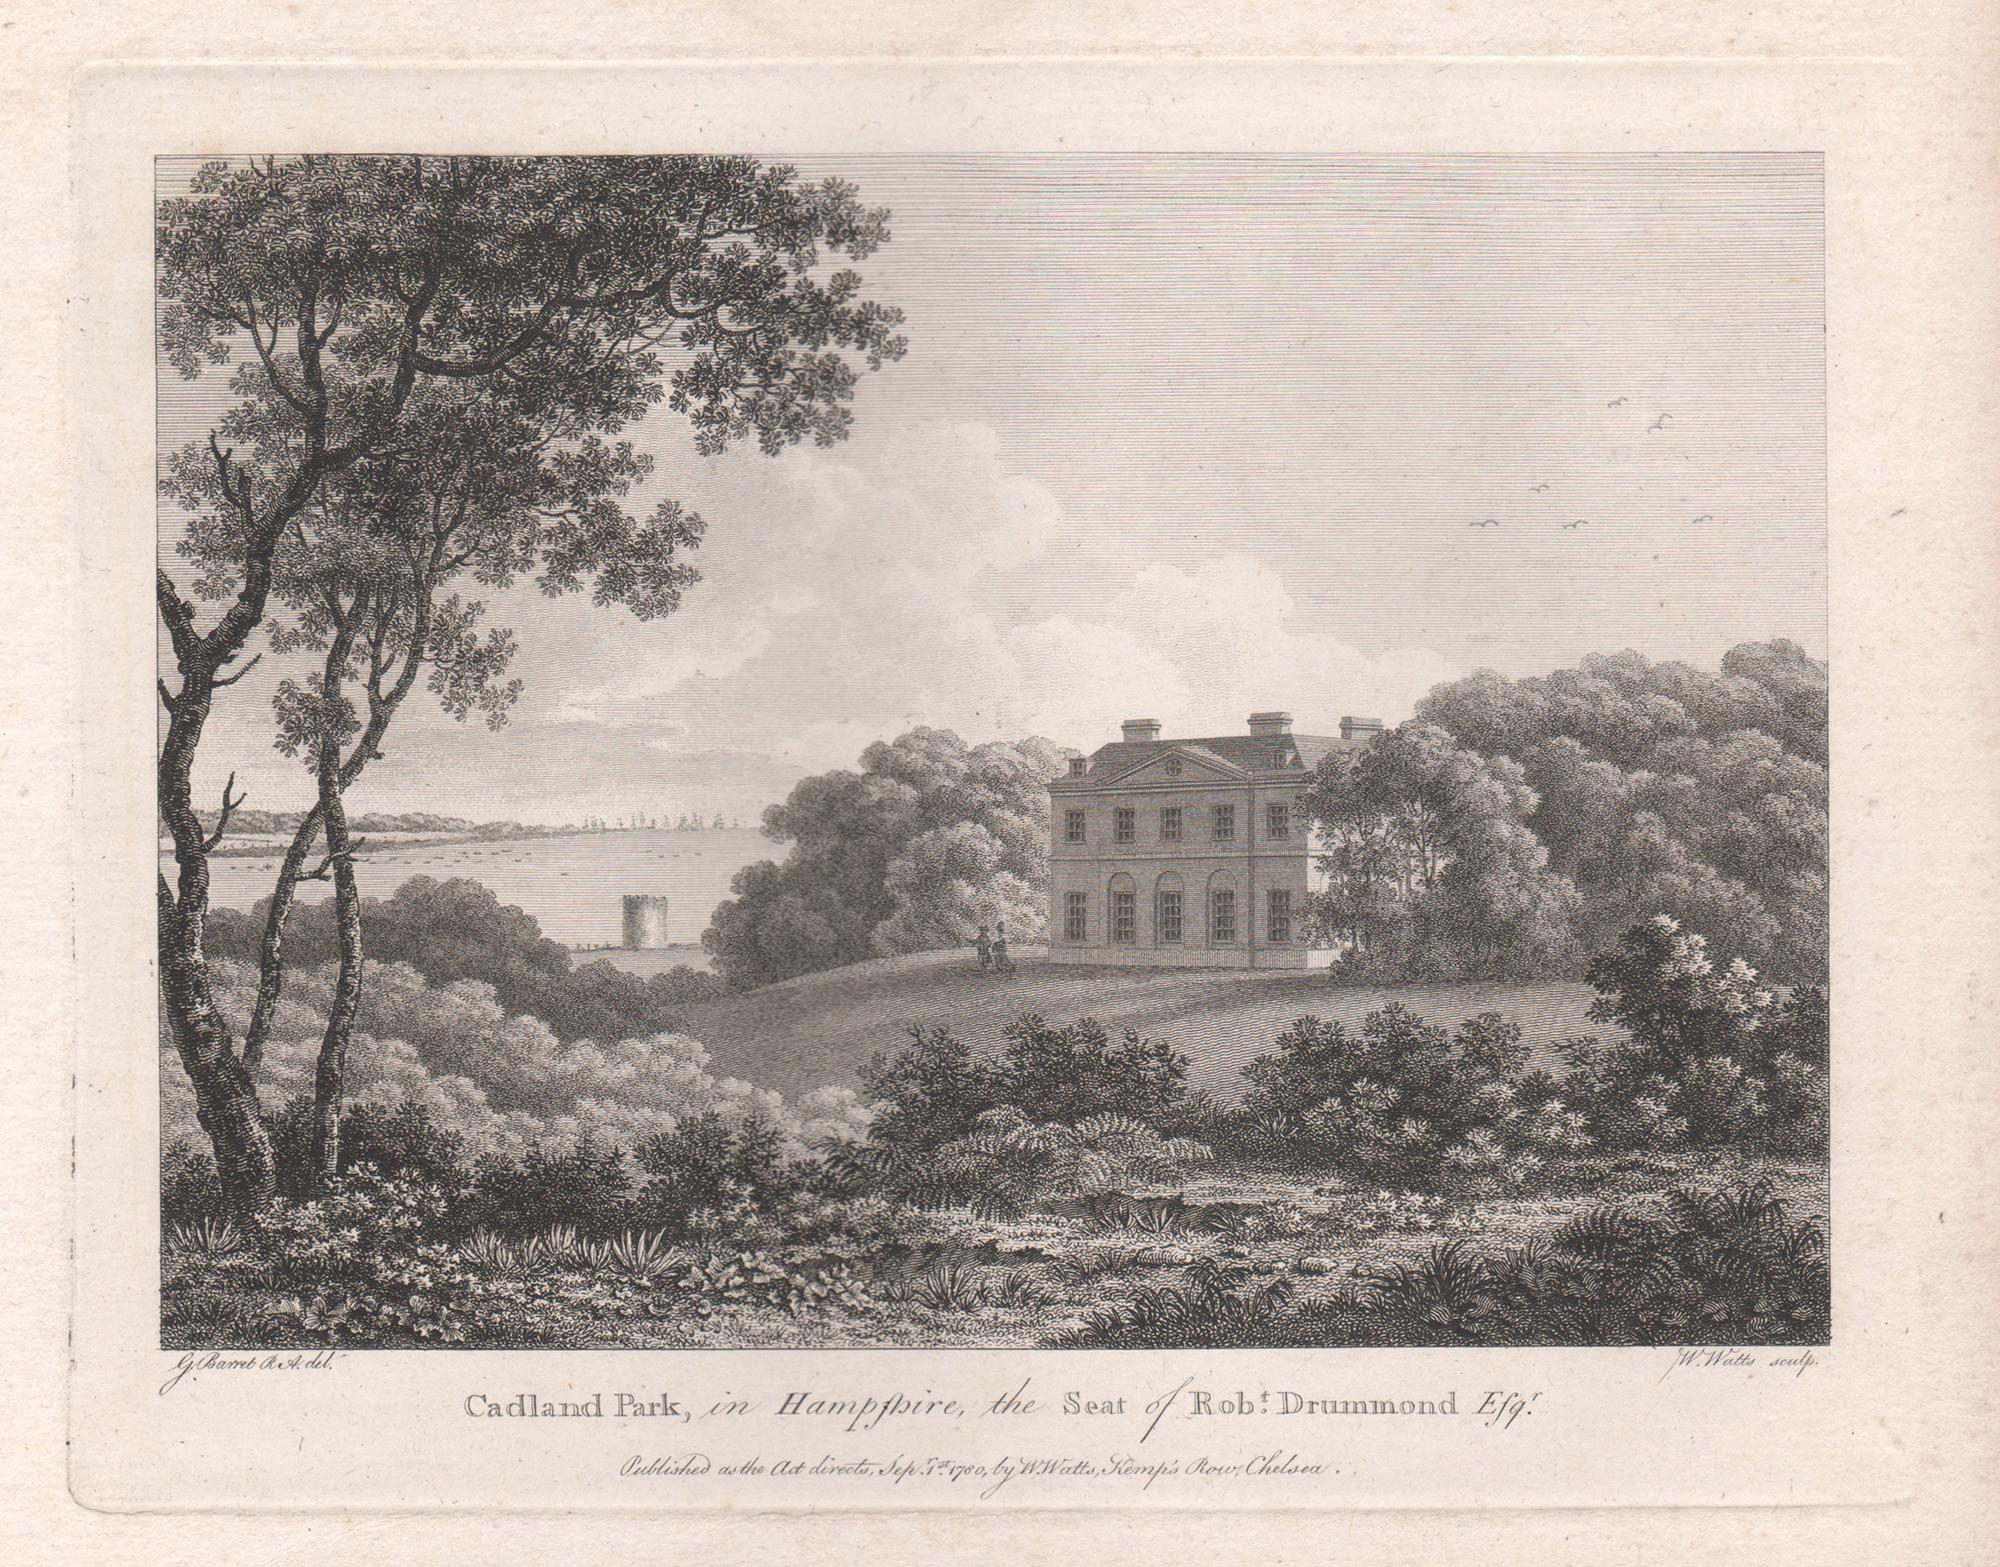 Cadland Park dans le Hampshire, gravure d'une maison de campagne anglaise du XVIIIe siècle, 1780